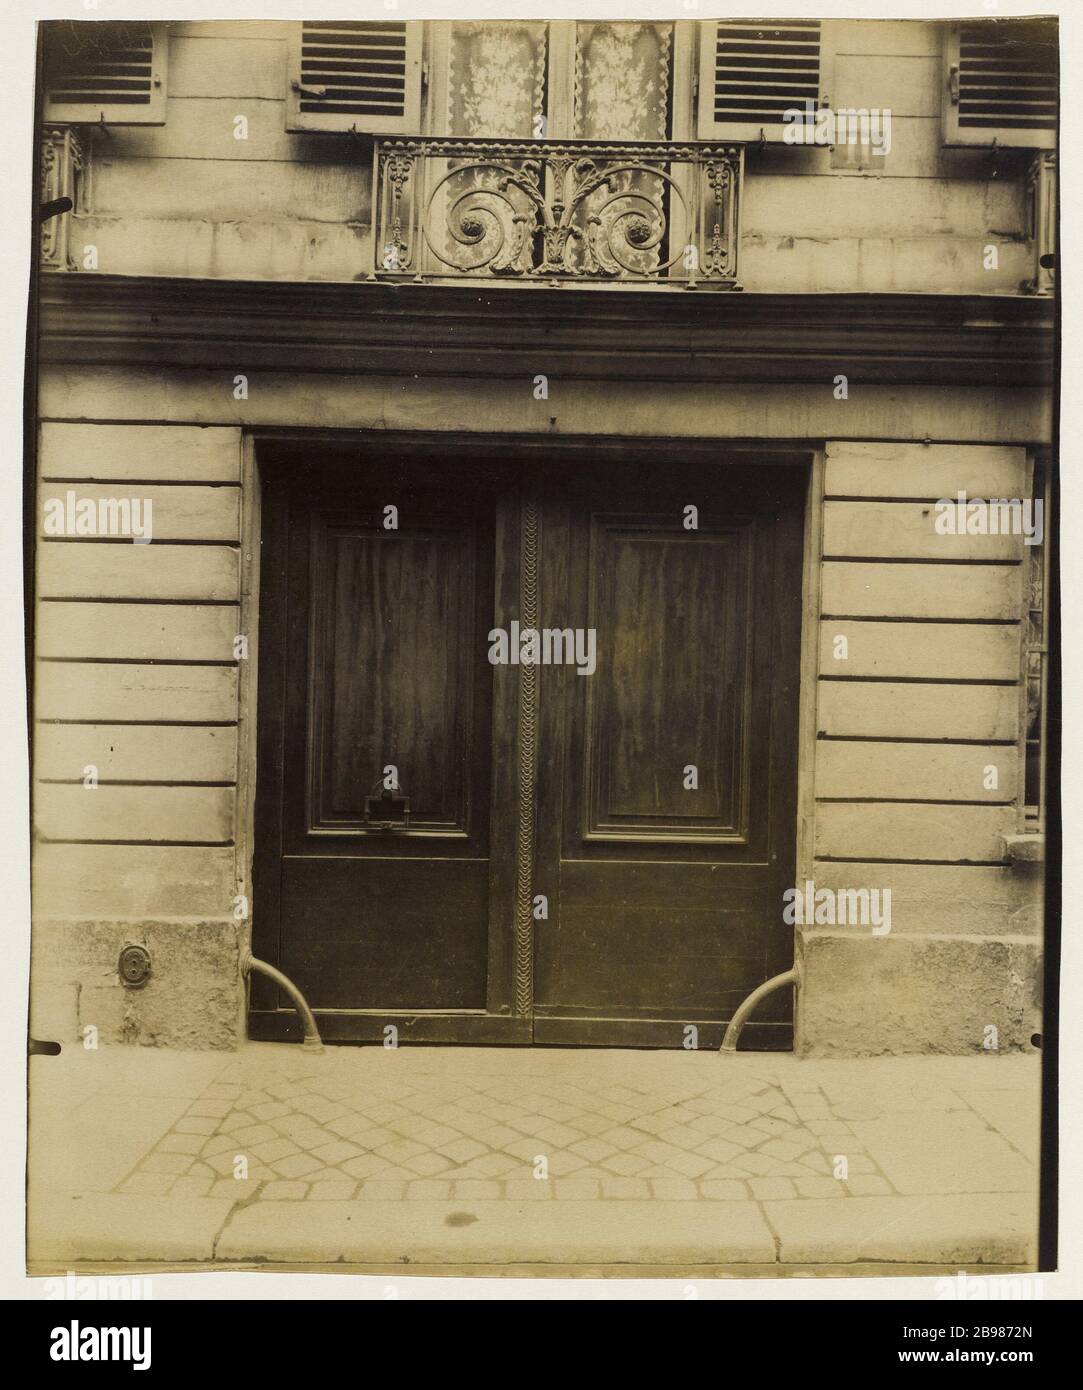 PORTE DE L'HÔTEL SULLY CHAROST, 11 RUE DU CHERCHE-MIDI, 6ÈME  ARRONDISSEMENT, PARIS porte, hôtel de Sully Charost, 11 rue du Cherche-Midi,  Paris (VIème arr.), 1913 . Photo d'Eugène Atget (1857-1927). Paris, musée